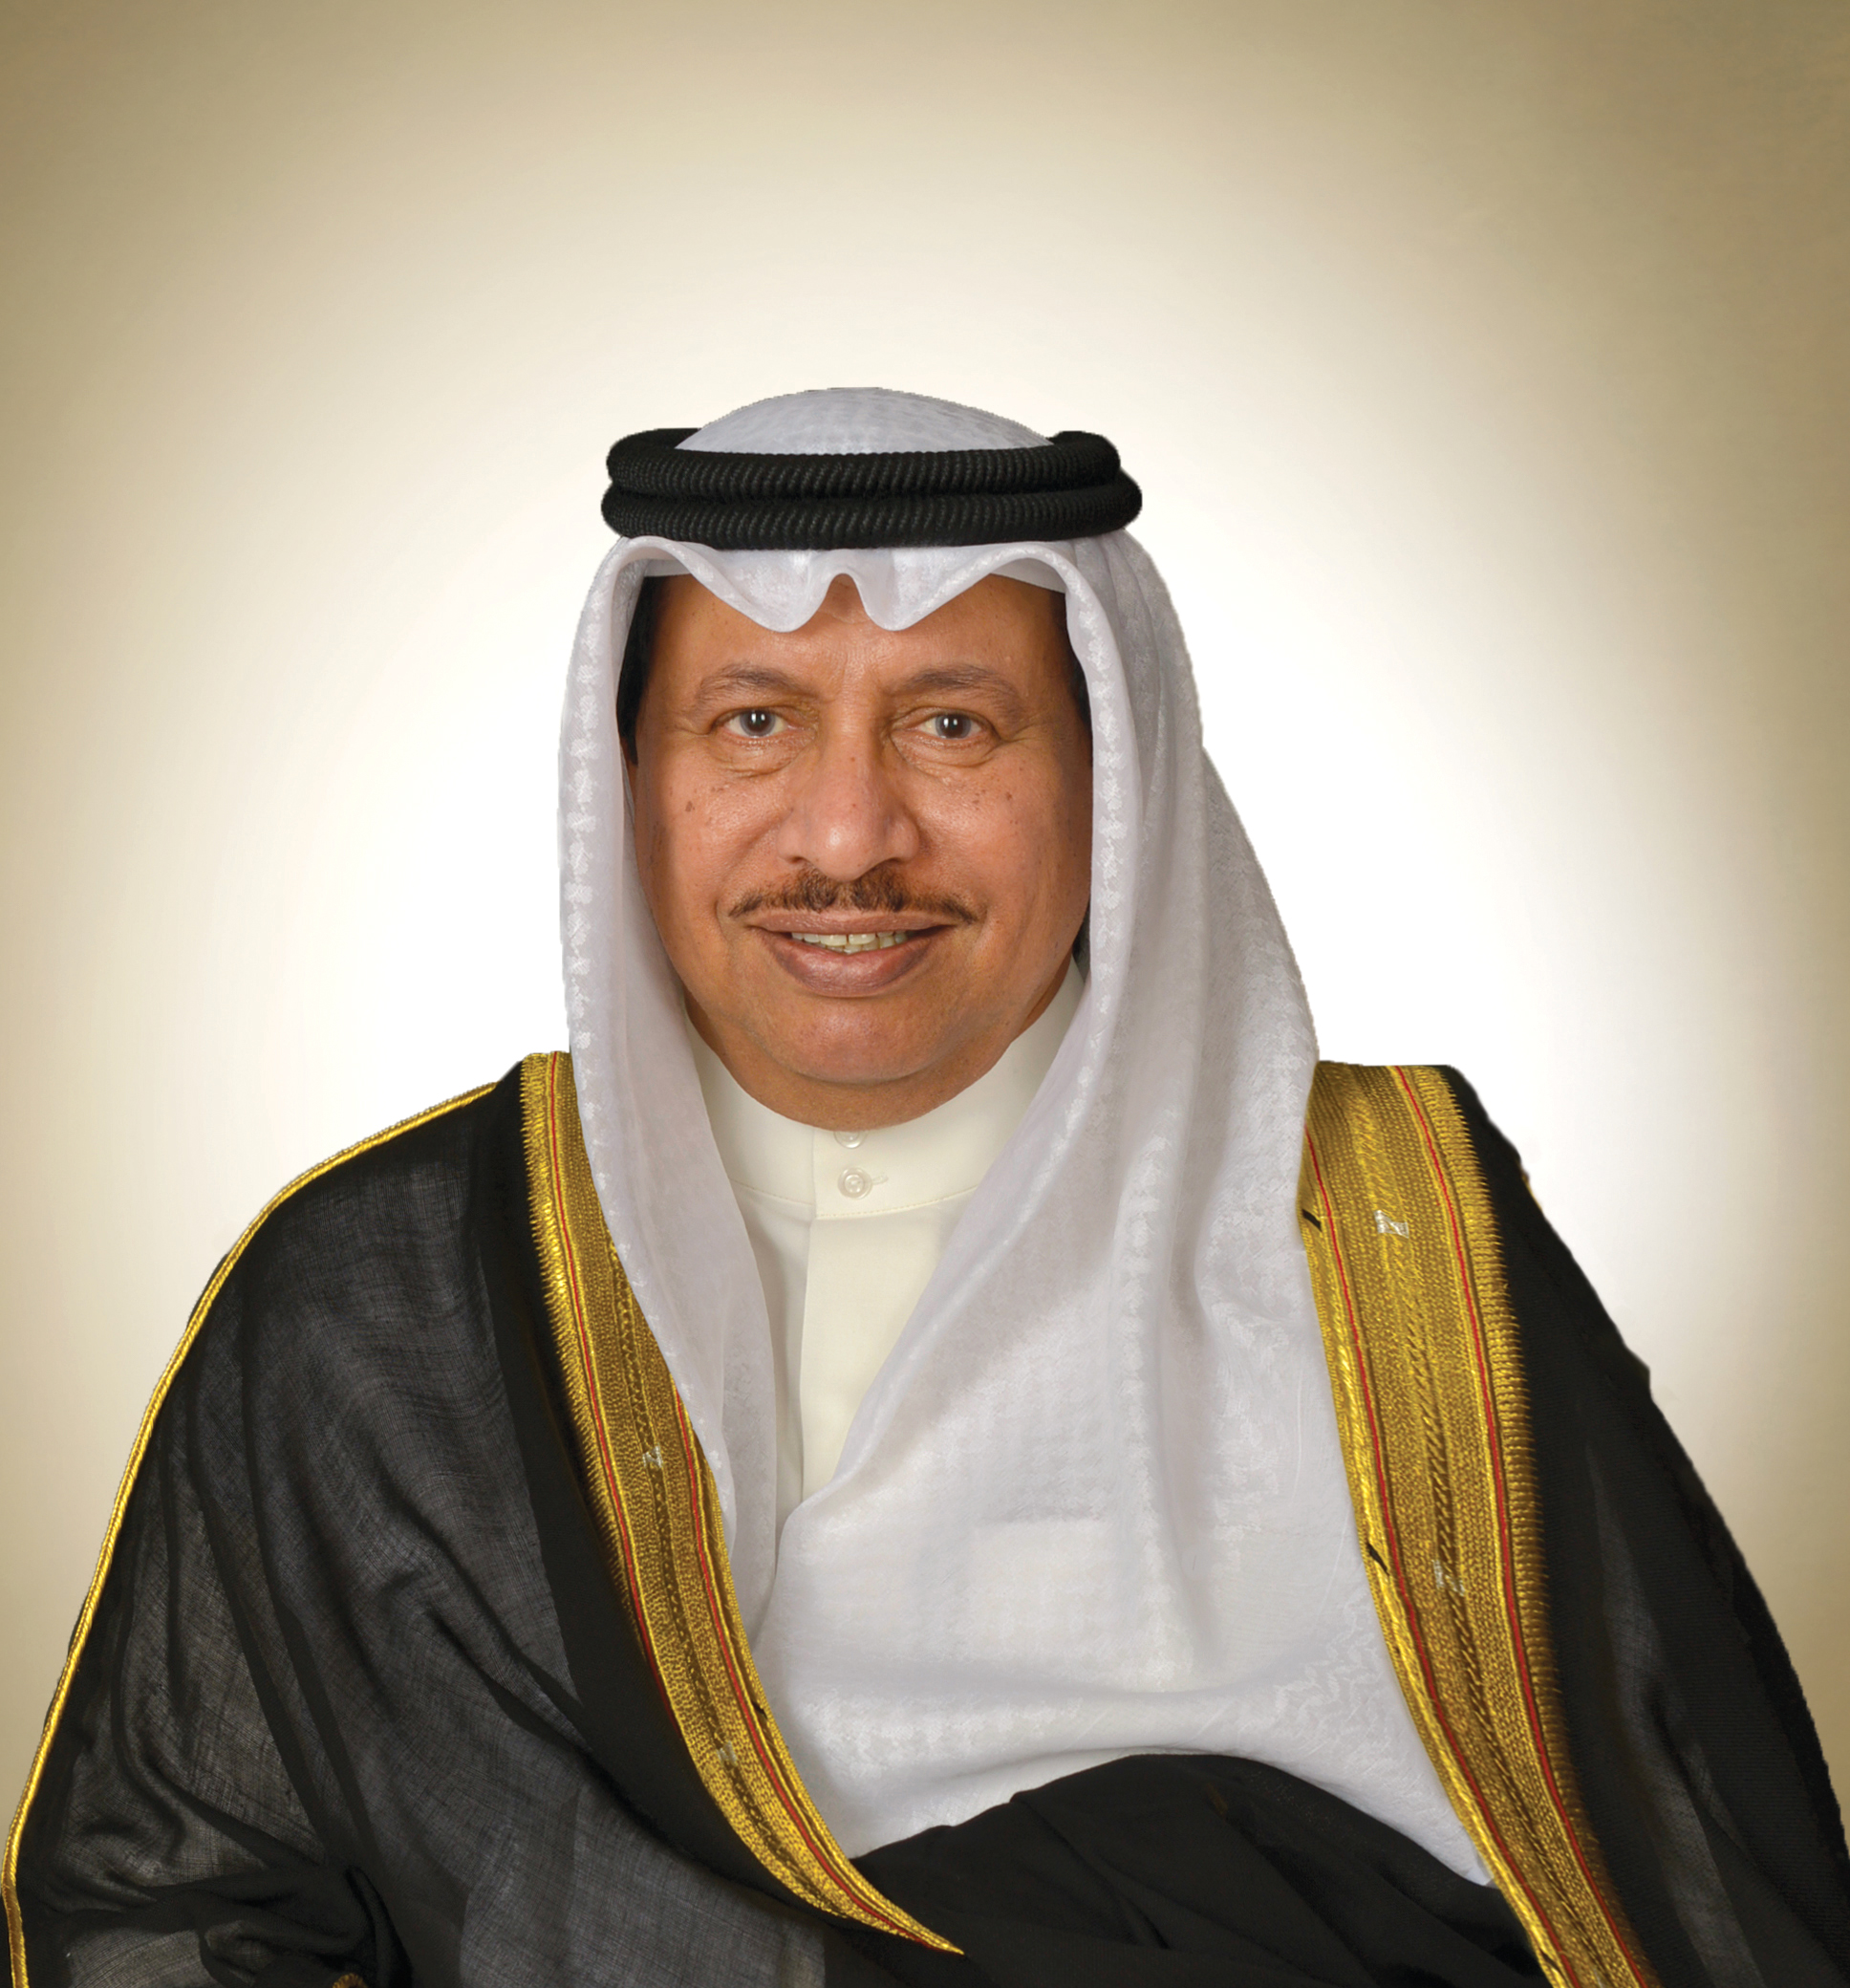 His Highness the Prime Minister Sheikh Jaber Al-Mubarak Al-Hamad Al-Sabah